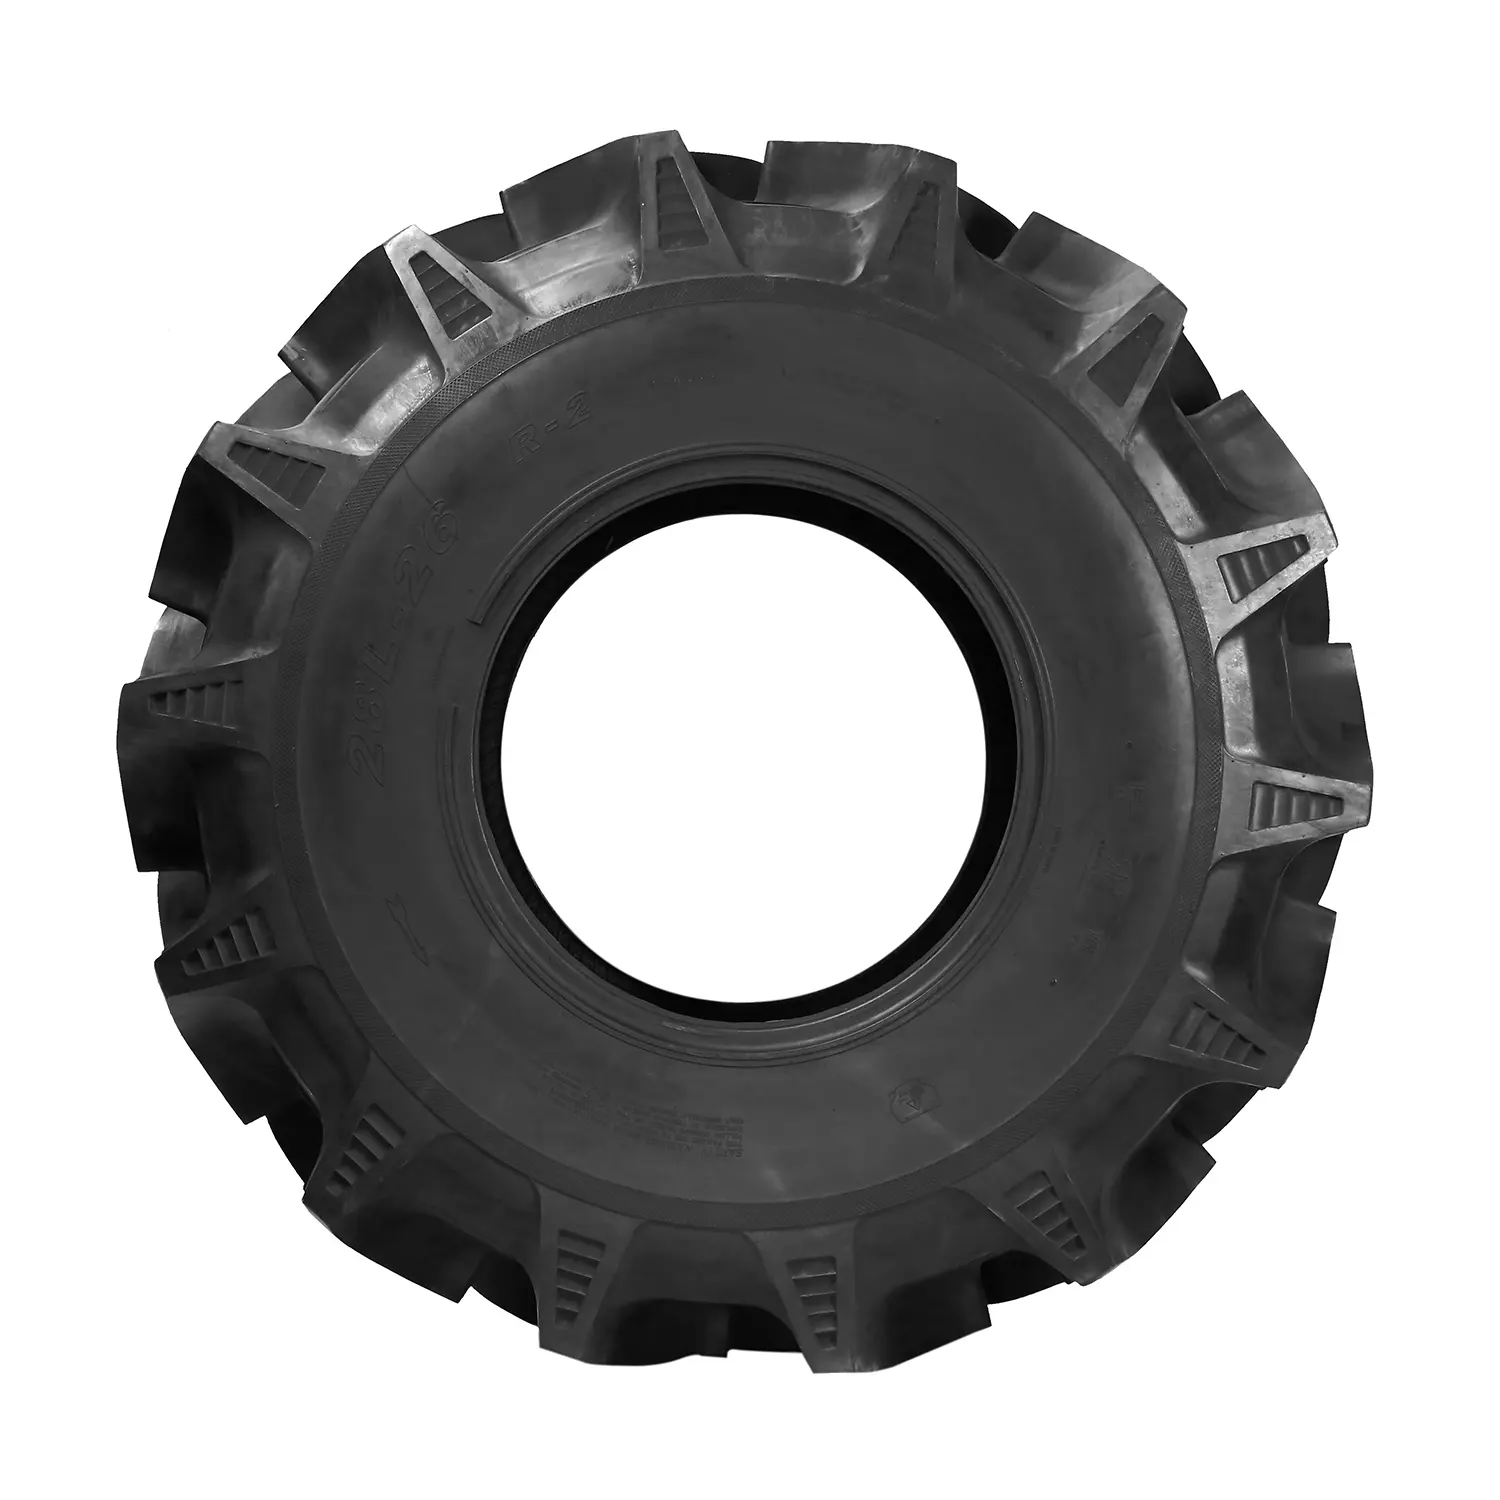 Les pneus R-2 peuvent être utilisés sur des tracteurs aussi bien que des moissonneuses Taille 9.5-20-10Pr